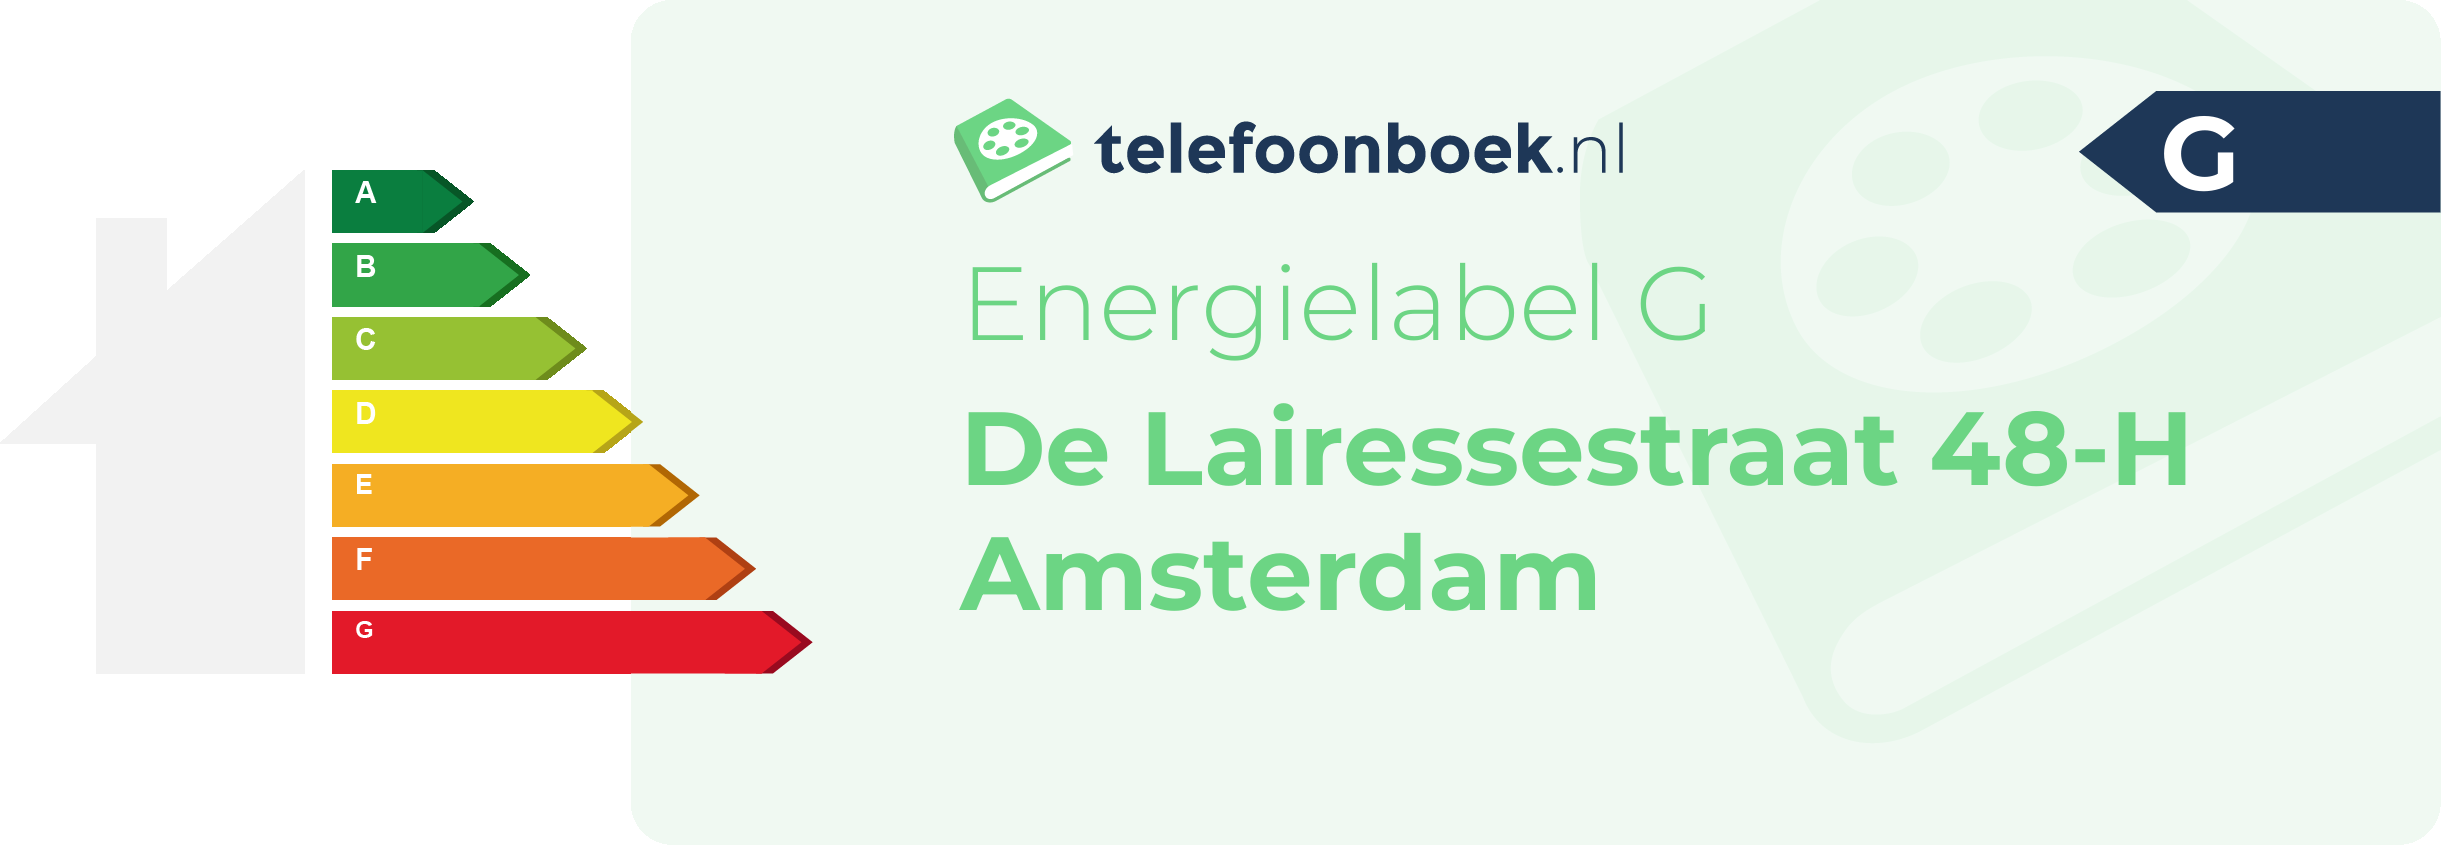 Energielabel De Lairessestraat 48-H Amsterdam